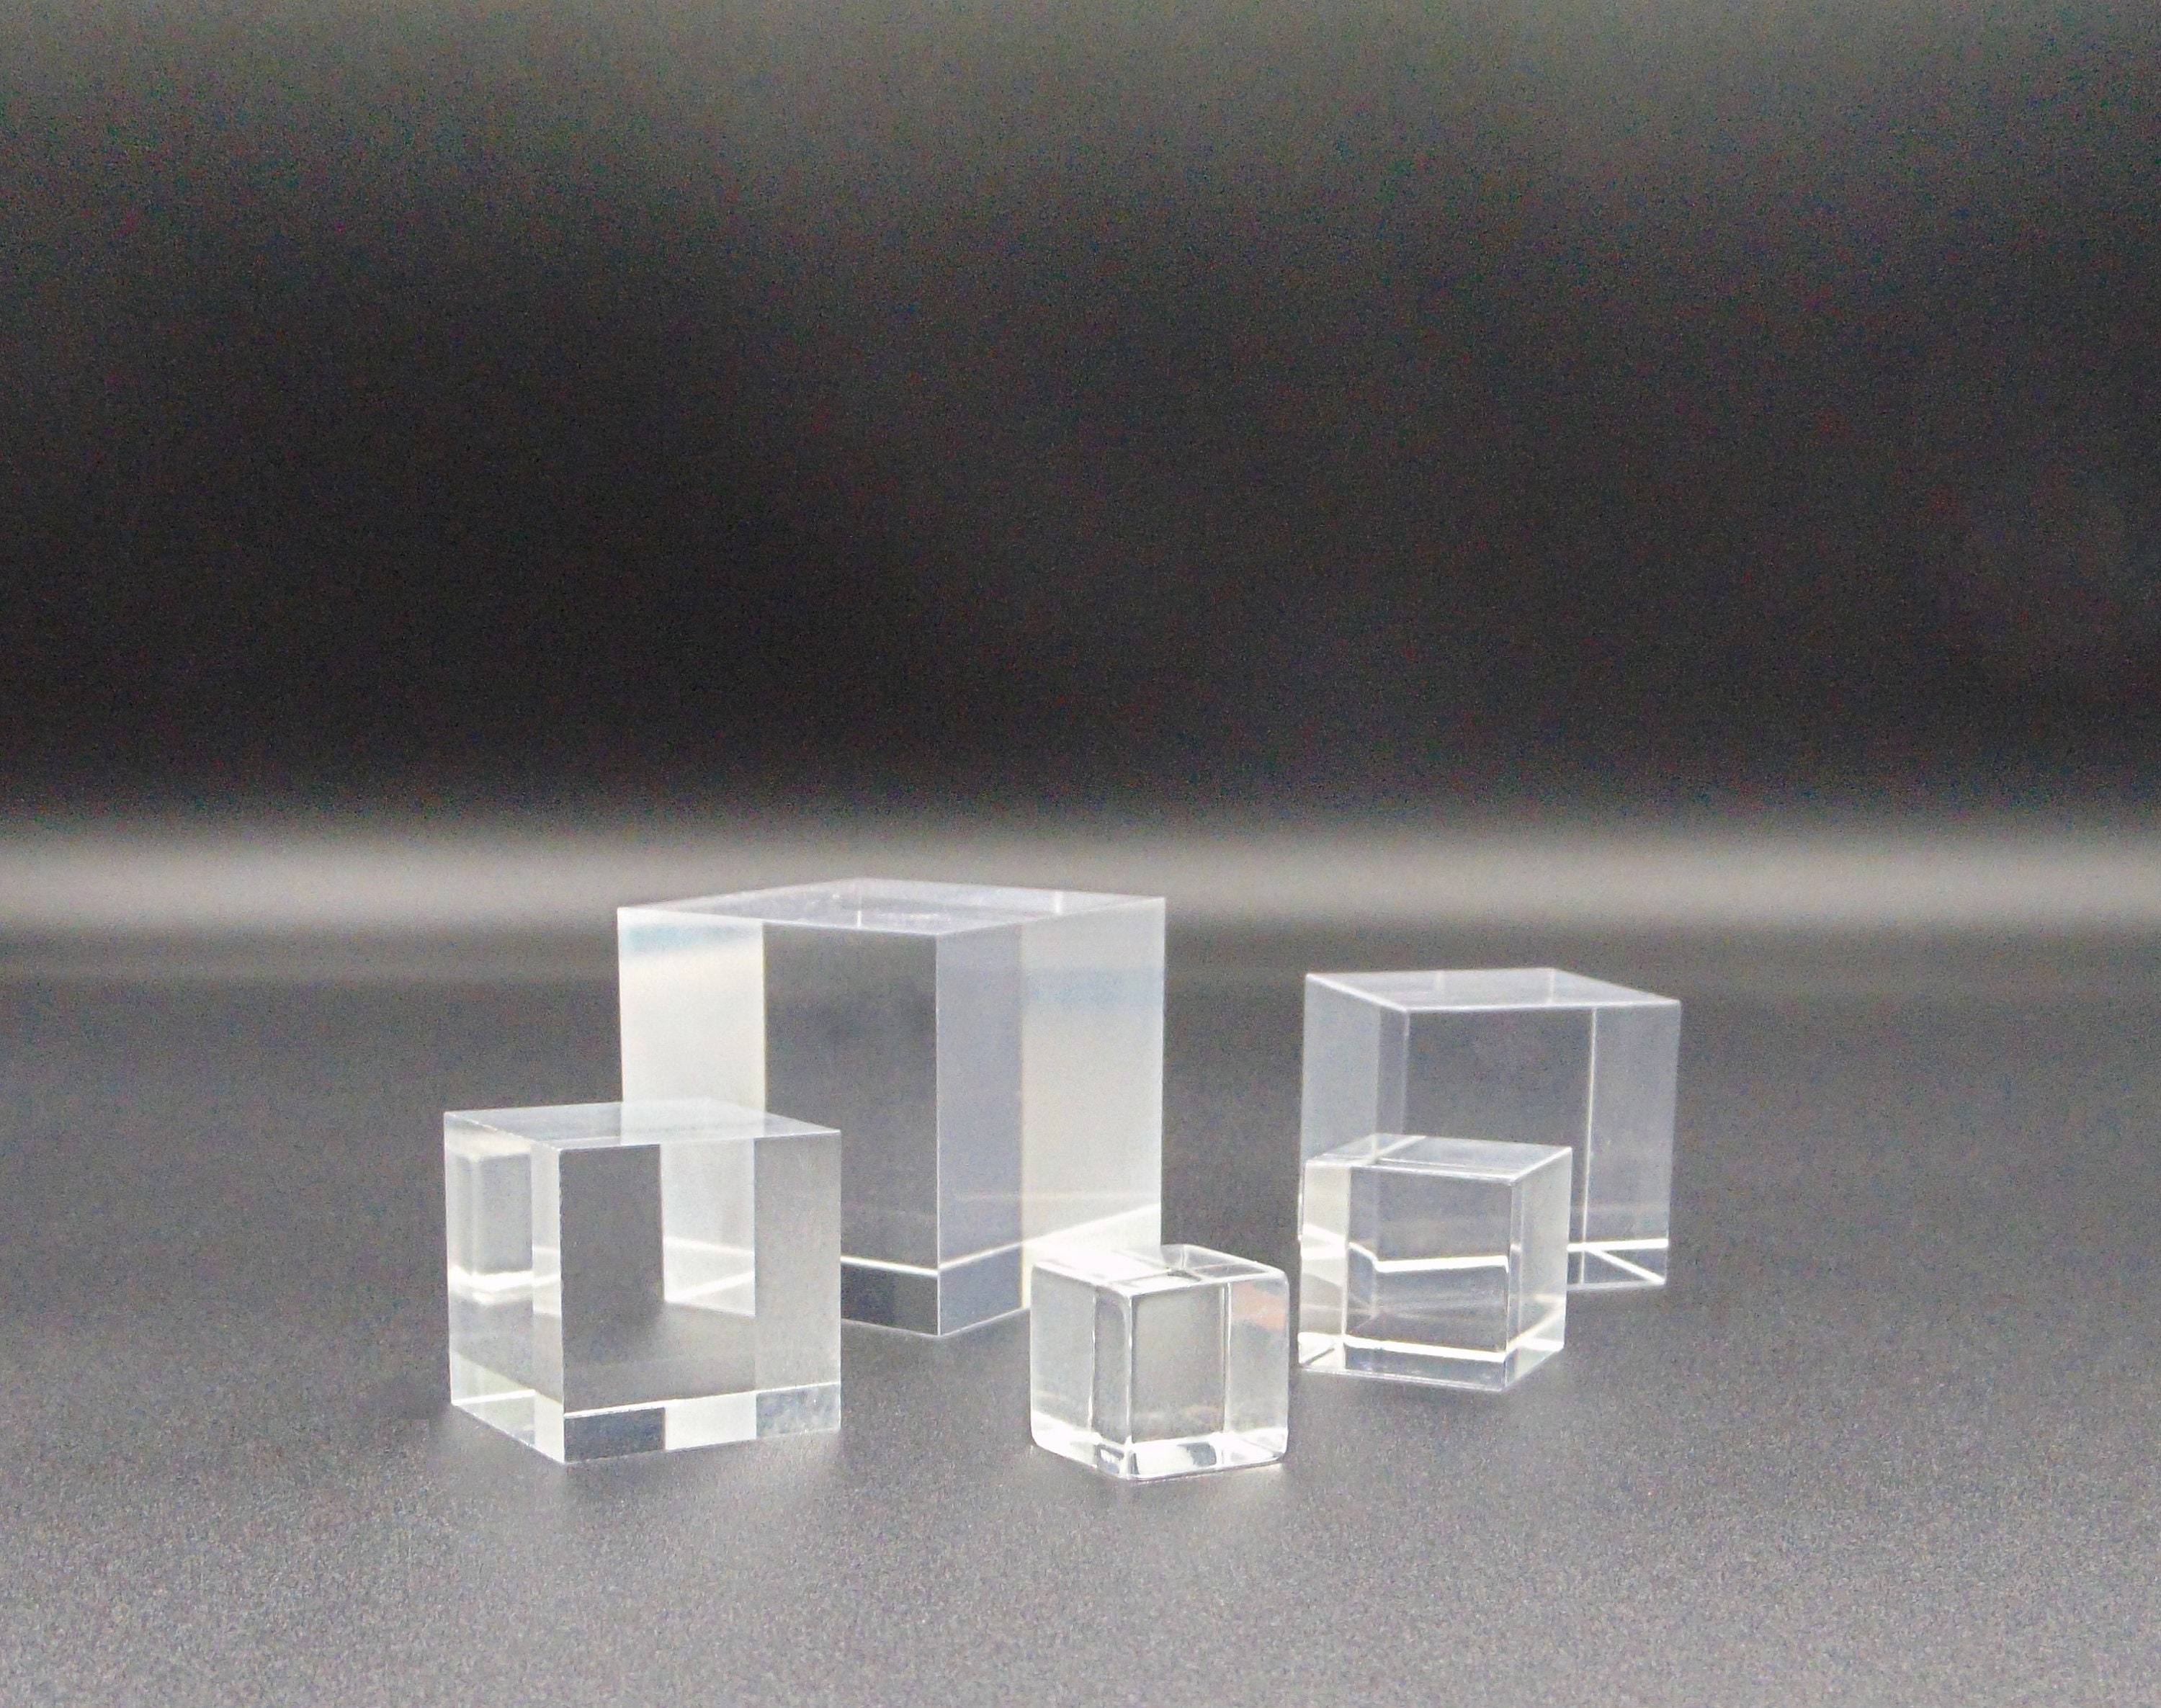 Acrylic Cubes - ACRYLIC CUBES - Order Online